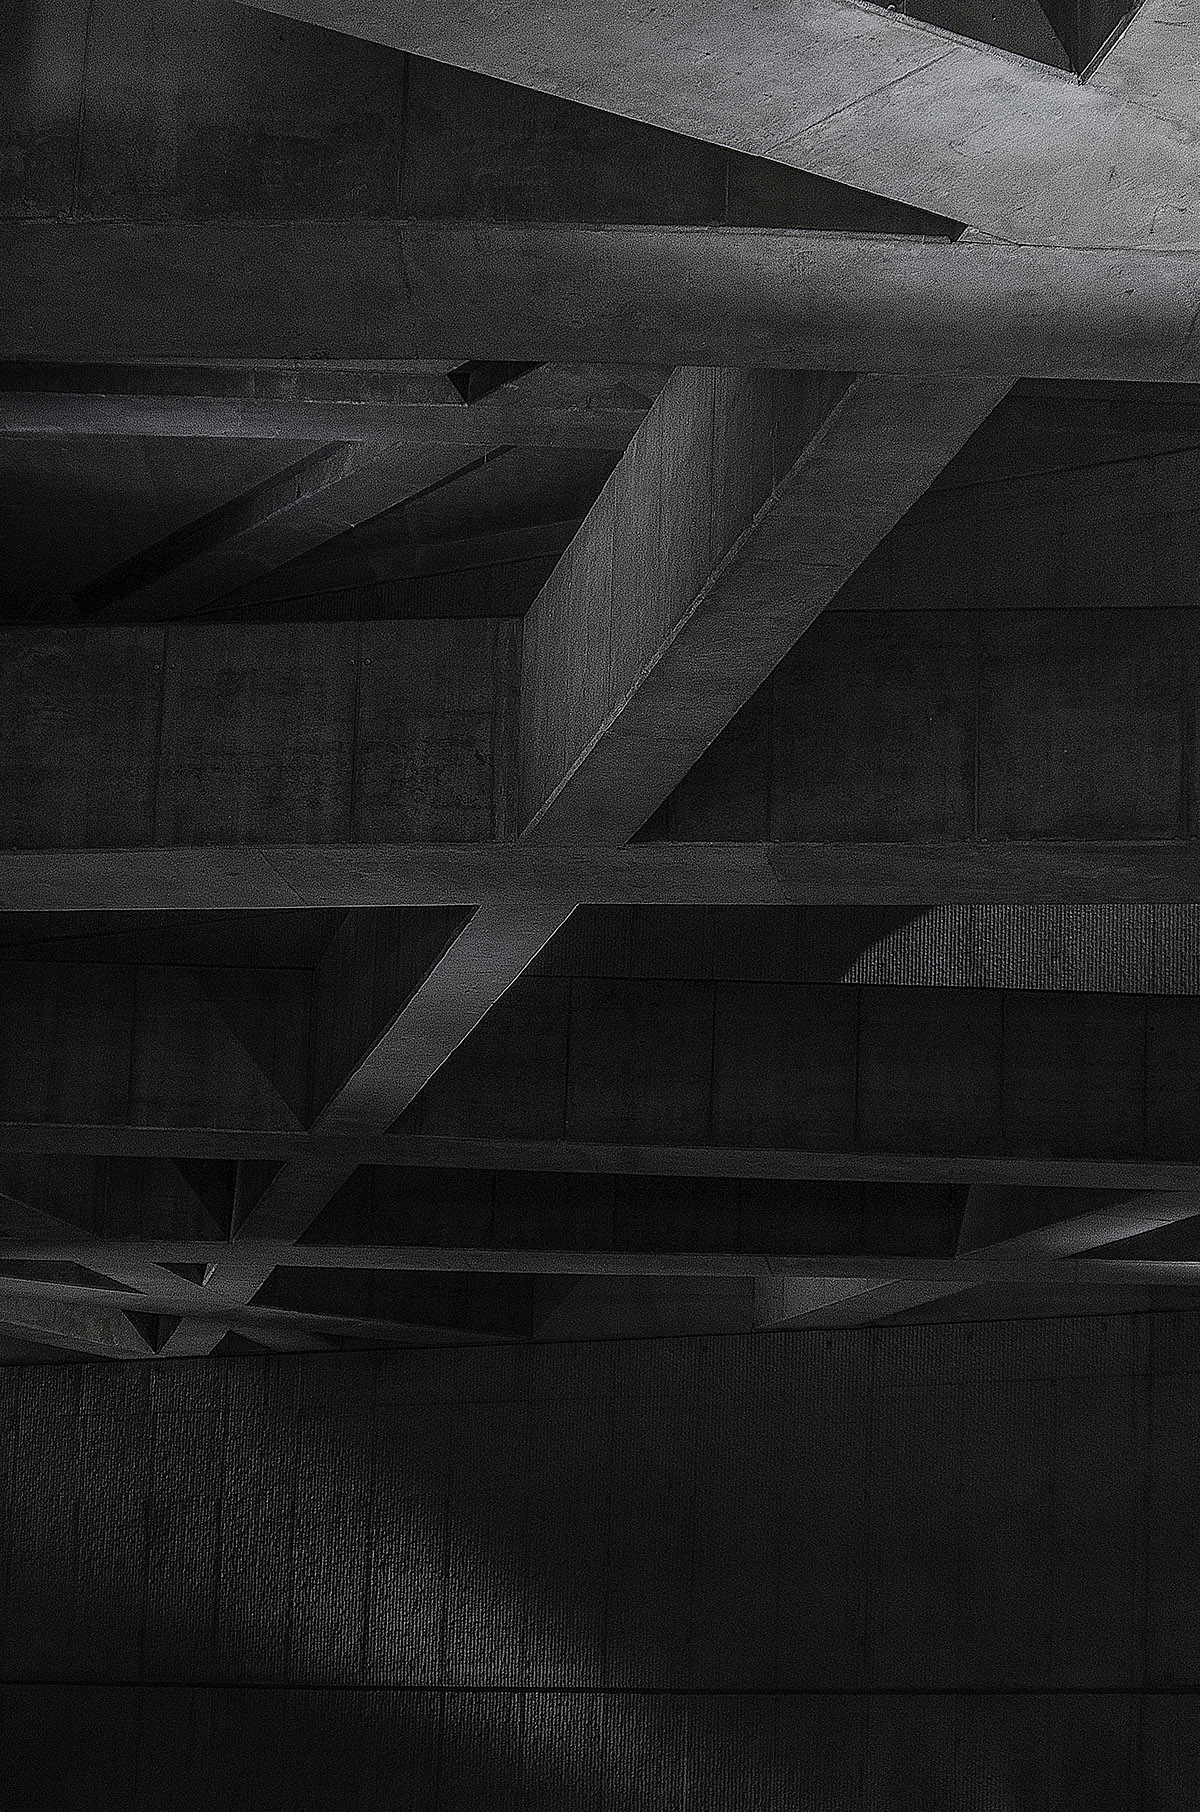 metro subway architect concrete abstract photo beton metro 4 metro4